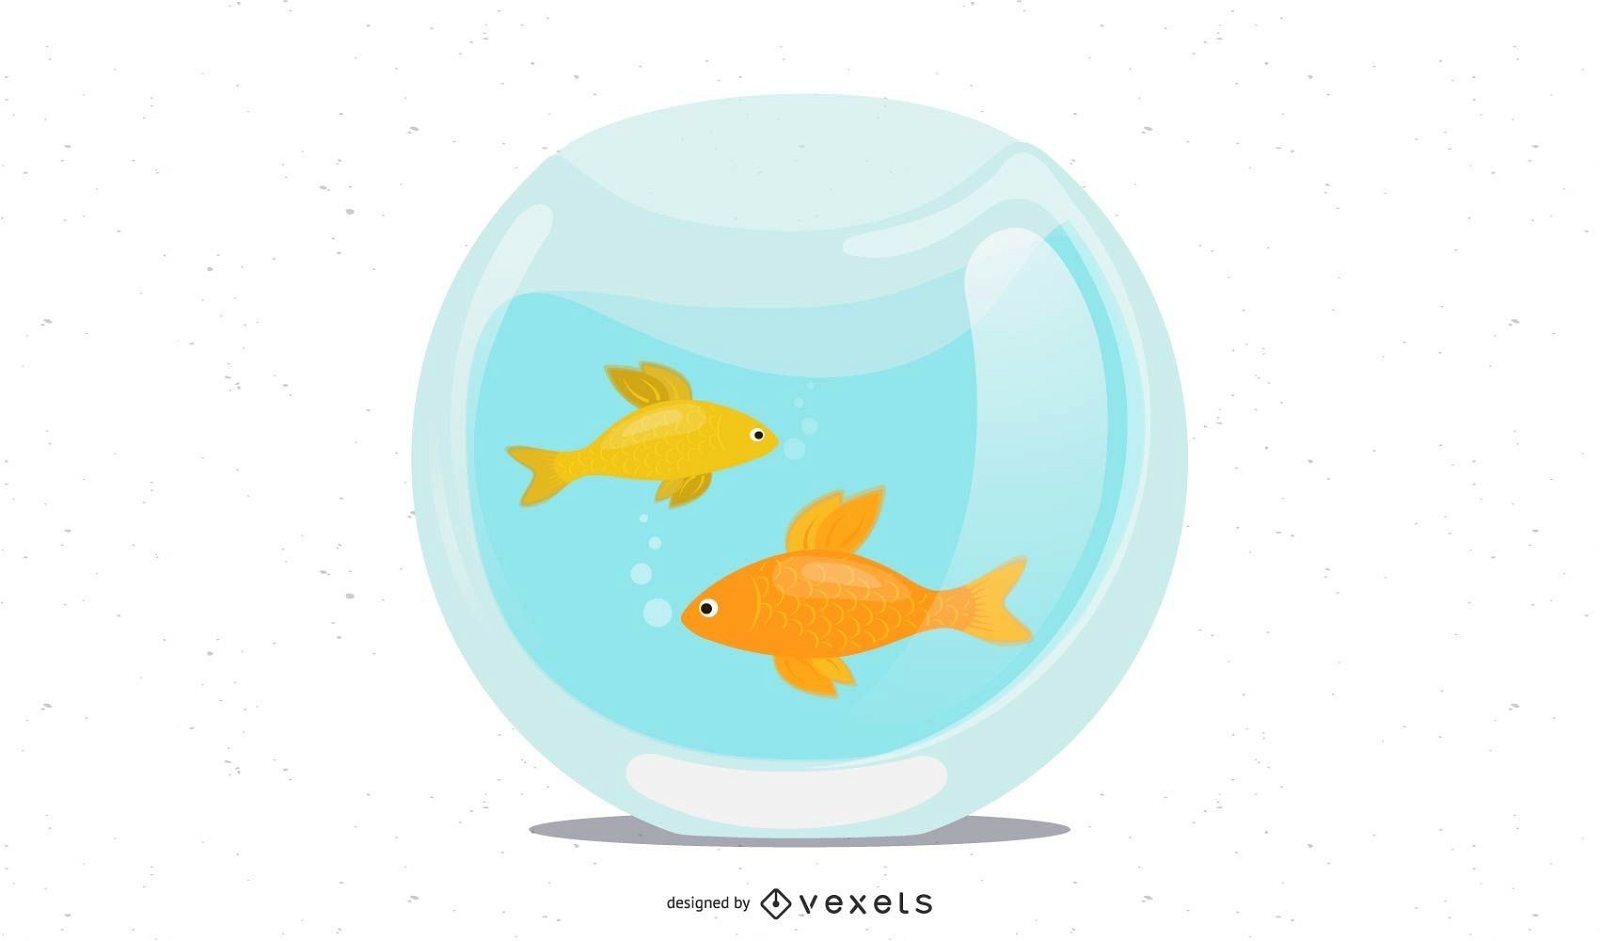 fishbowl goldfish illustration design